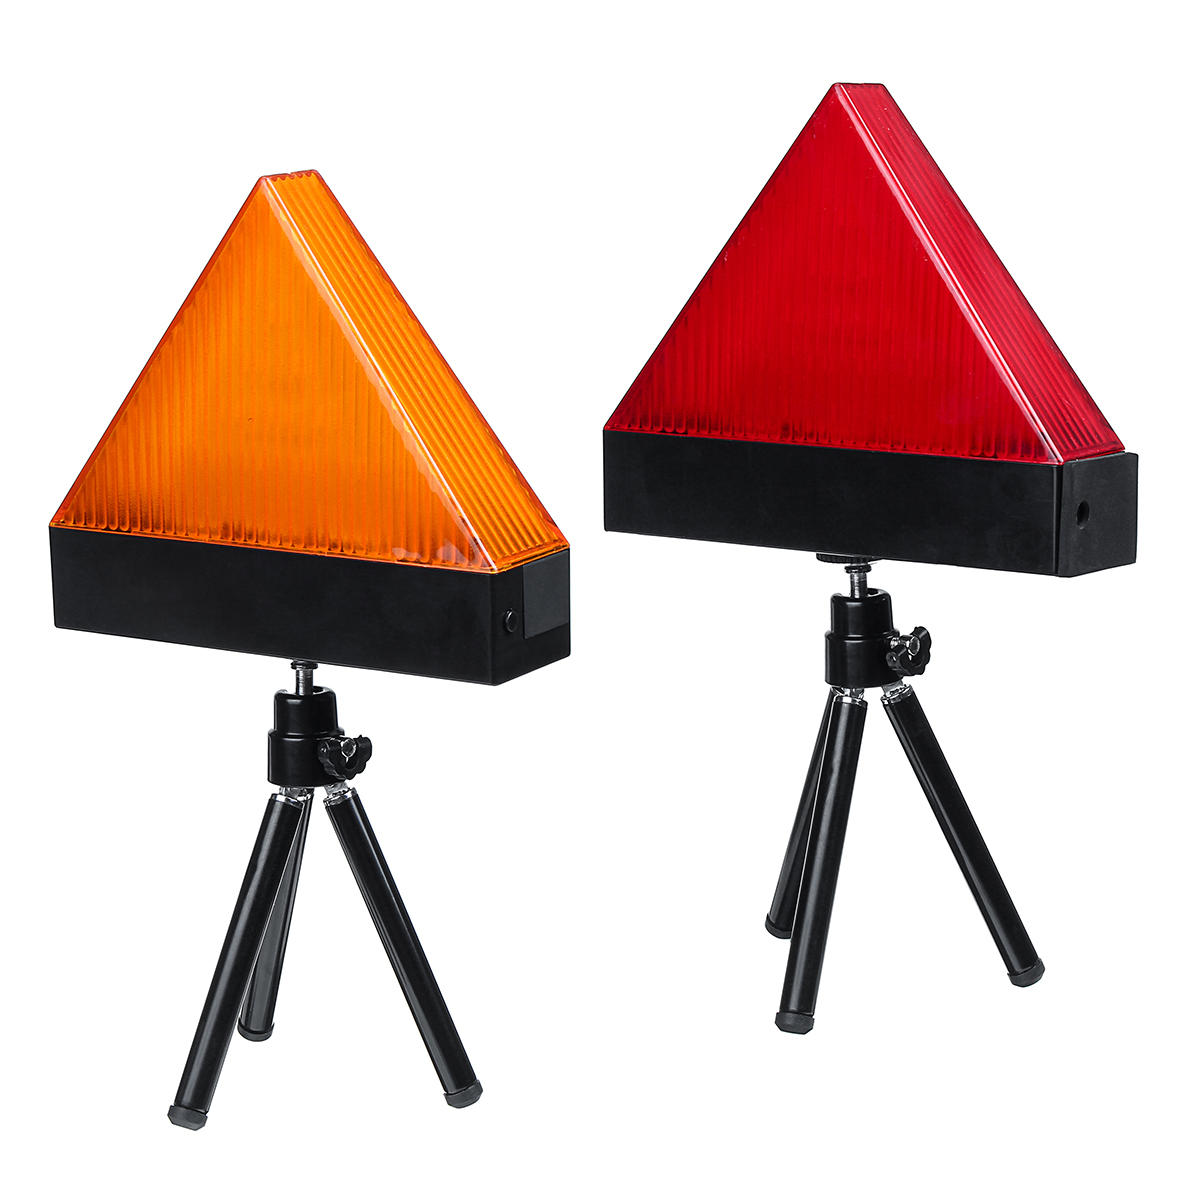 Universal wiederaufladbare LED Auto Dreieck Warnblitzleuchten rot / gelb mit Stativ Notfall Sicherheit Flash